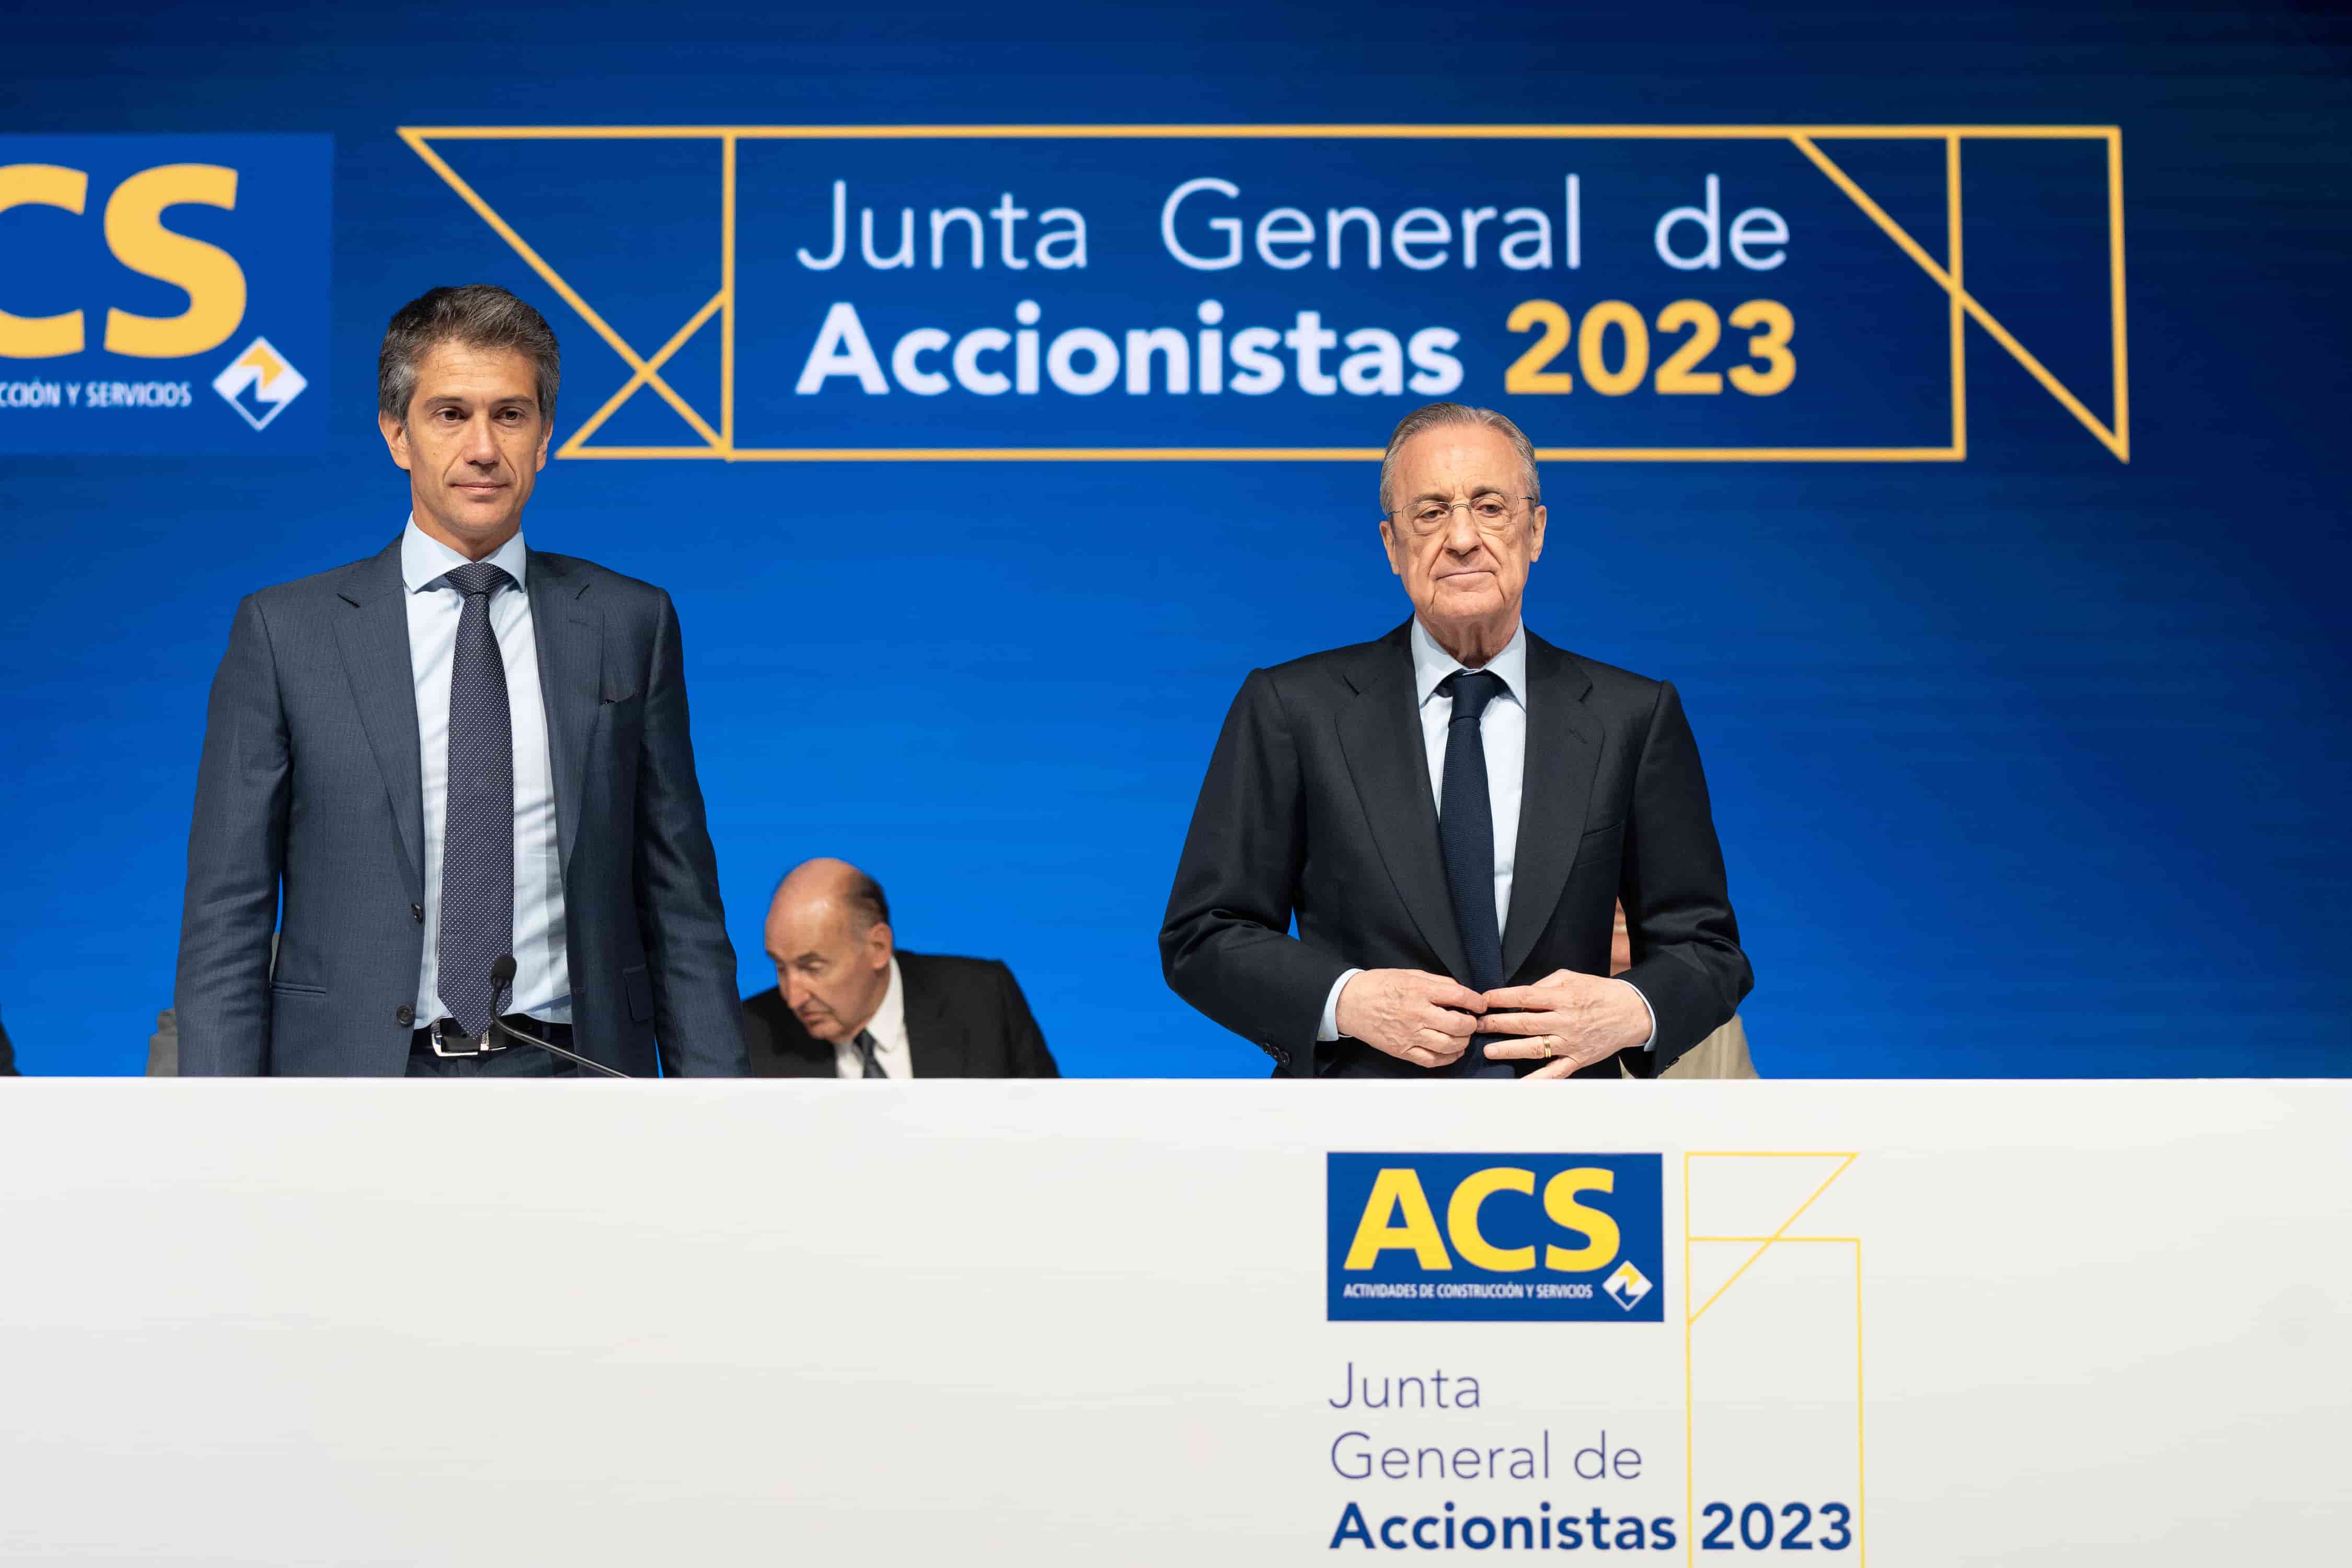 Junta de accionistas de ACS en 2023.